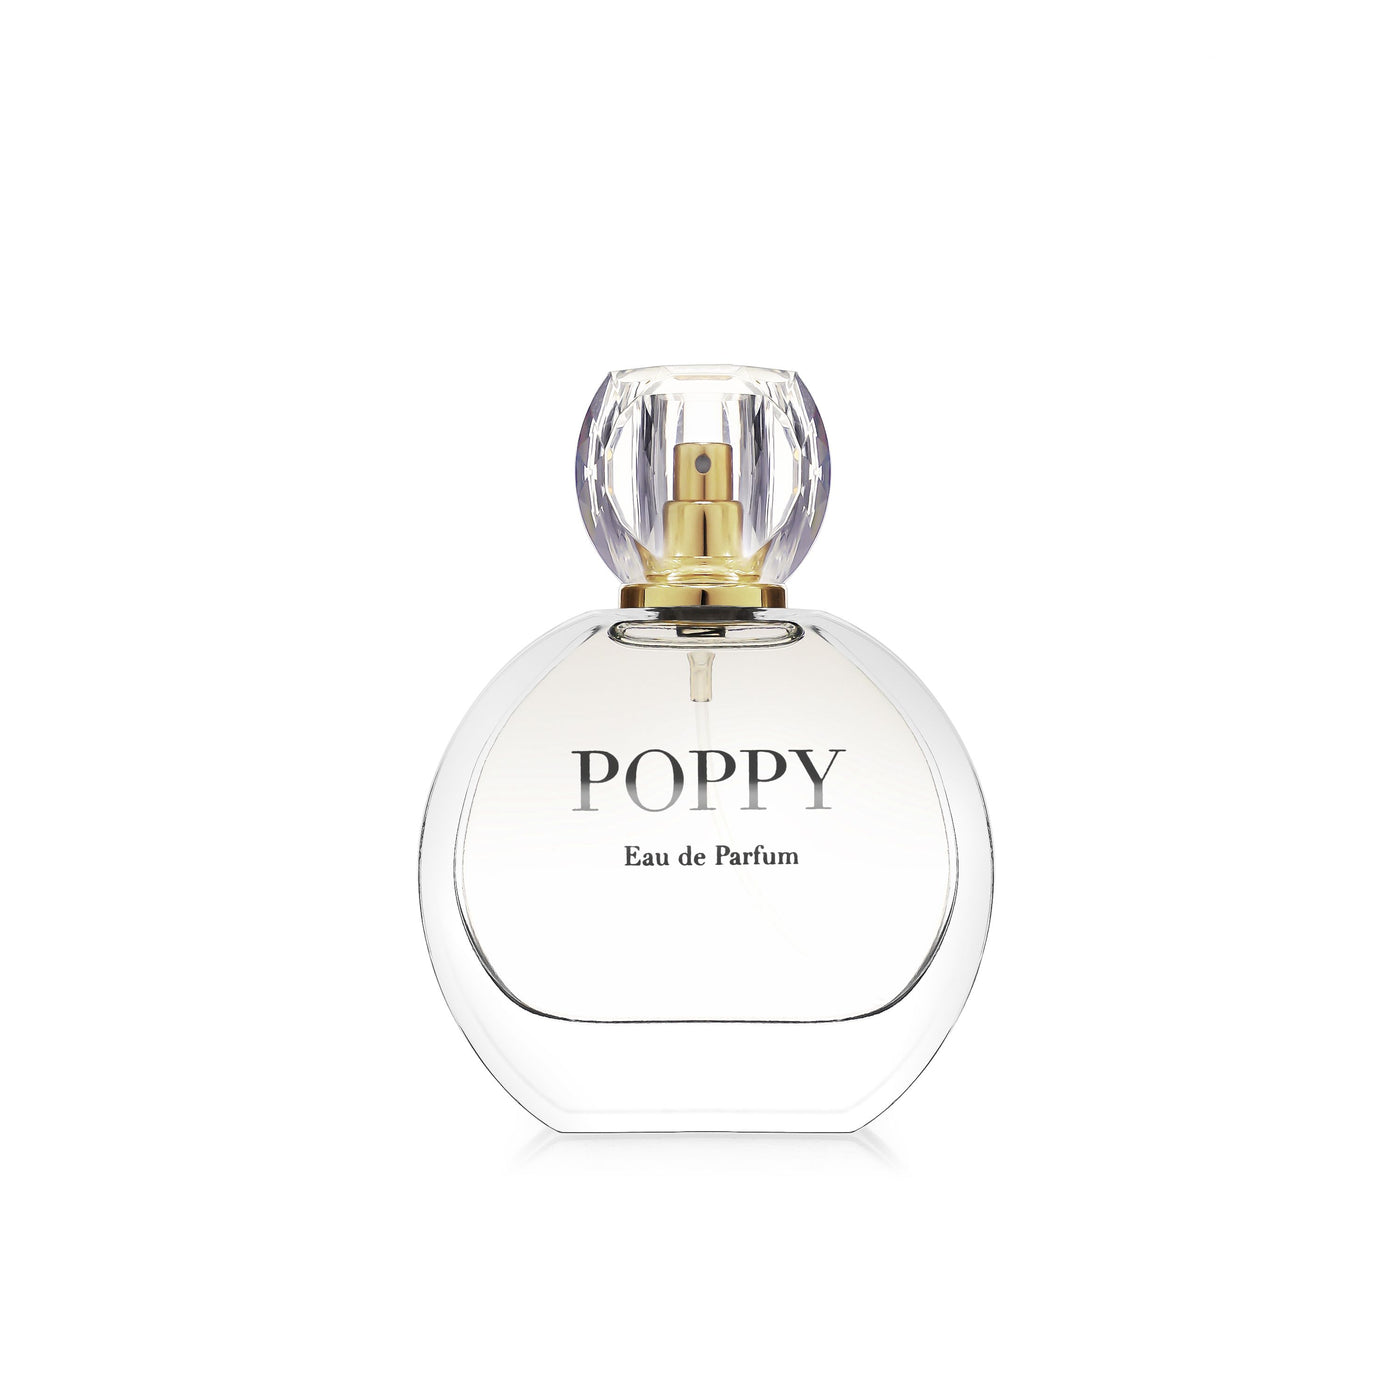 Tipperary Crystal - Lulubelle Eau De Parfum